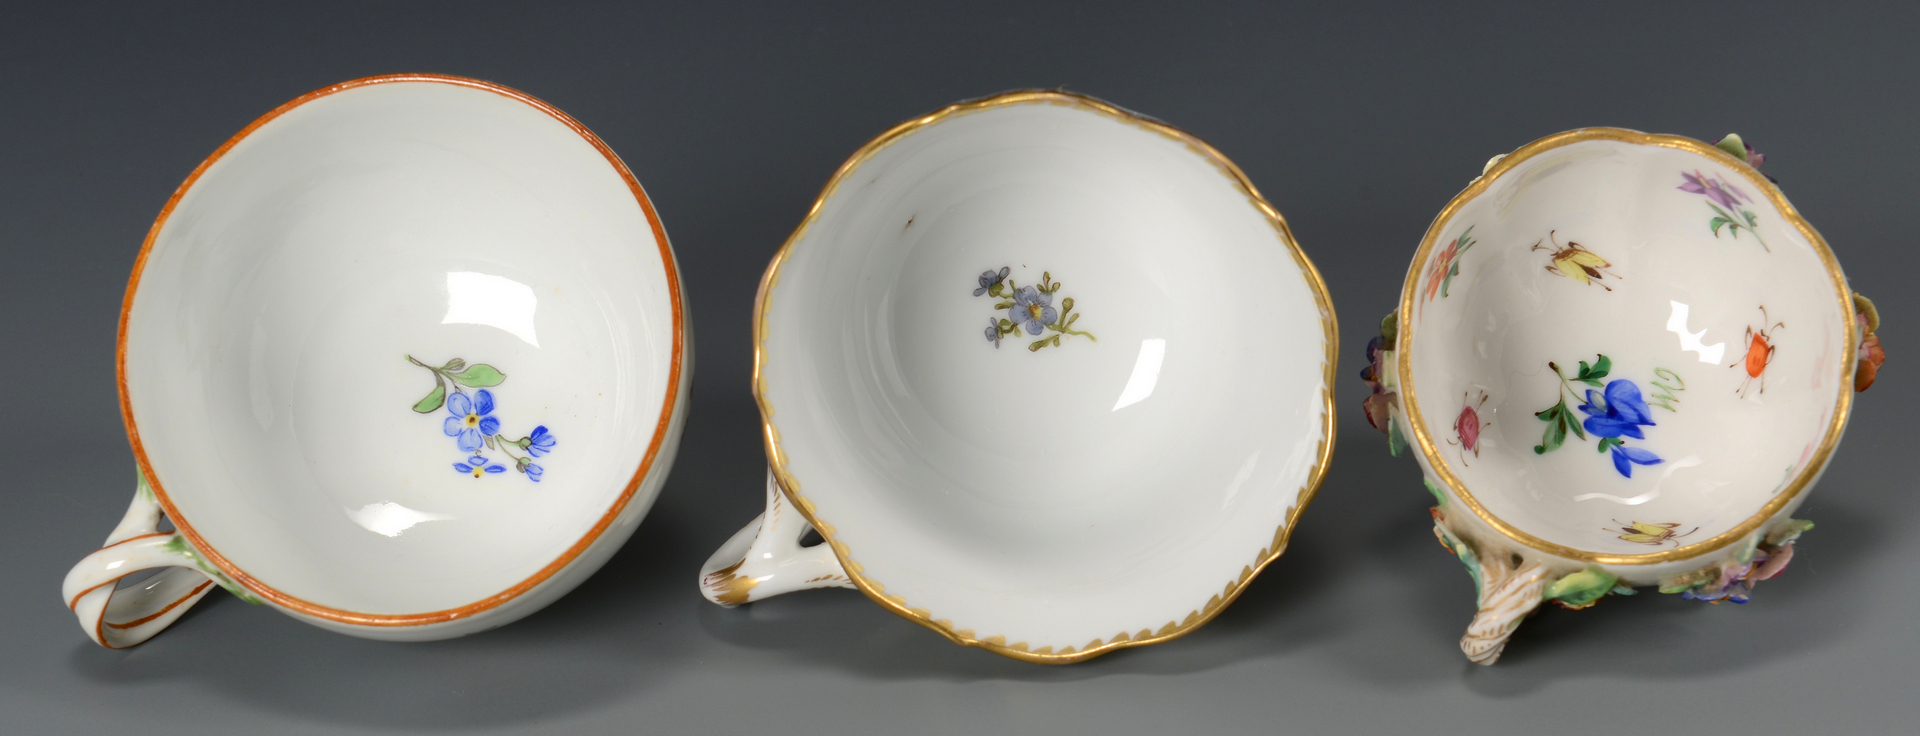 Lot 619: Group of German Porcelain, 9 pcs.